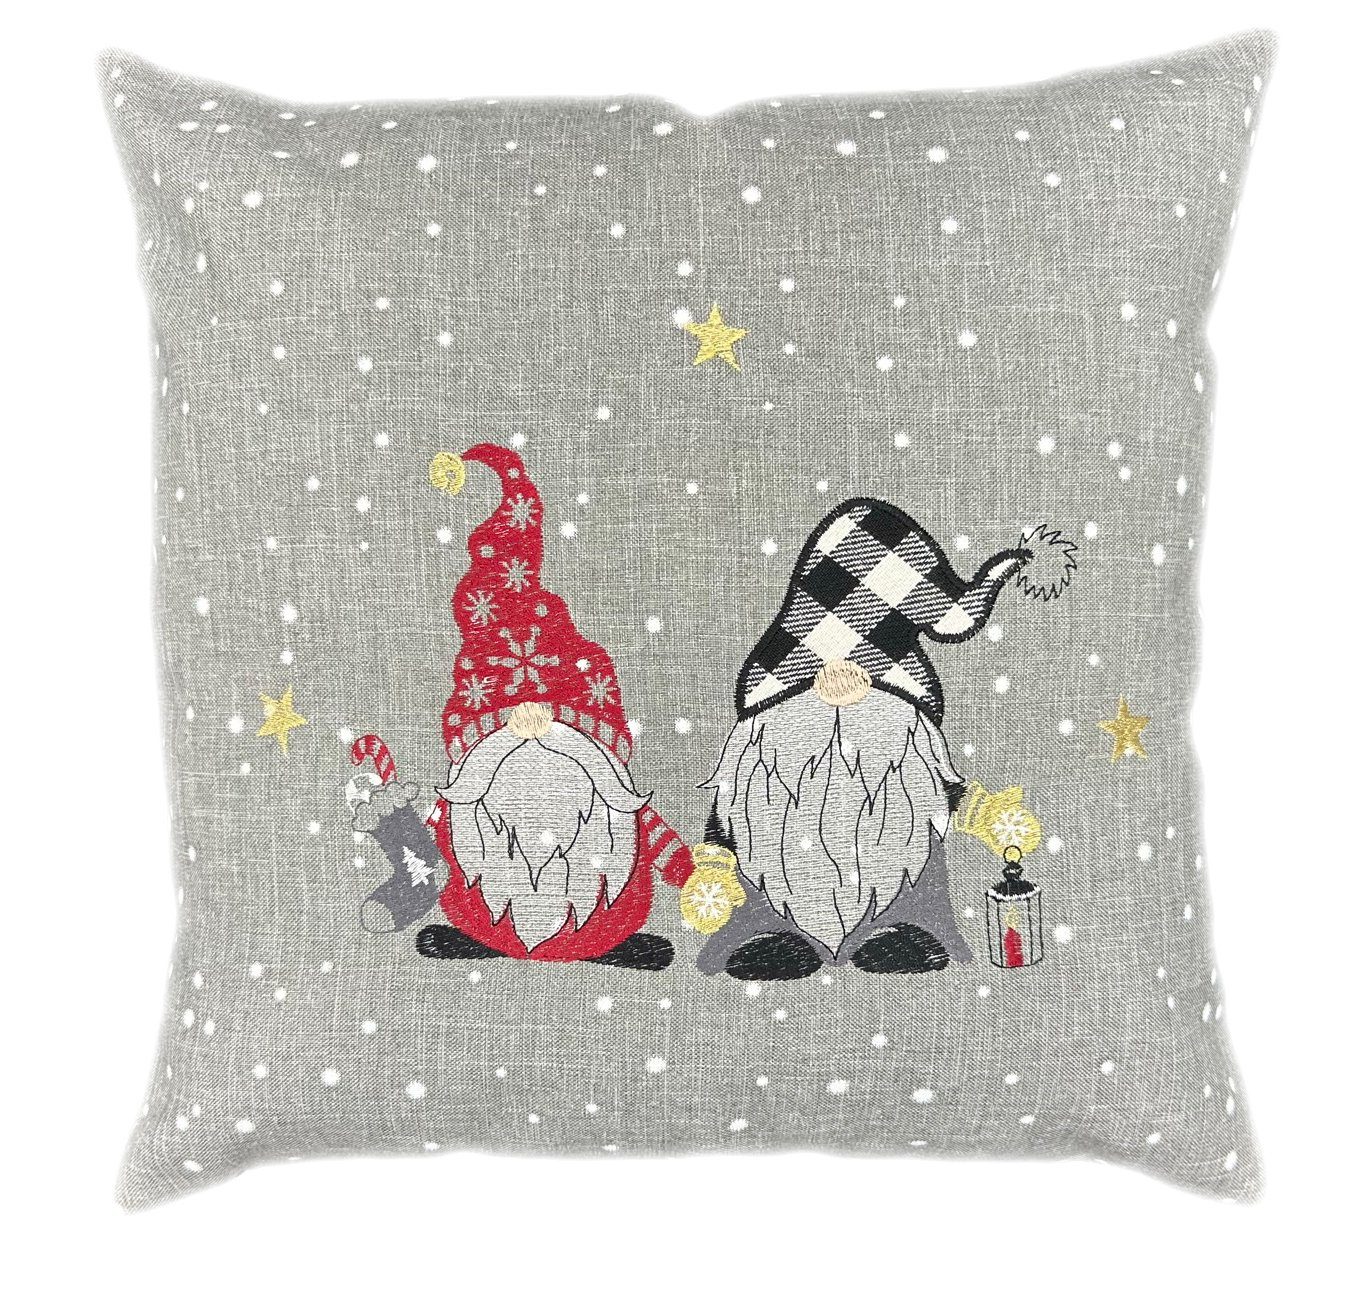 Advent Kissenhülle mit hellgrau TextilDepot24, Motiven verschiedenen Reißverschluss Weihnachten Winter, mit